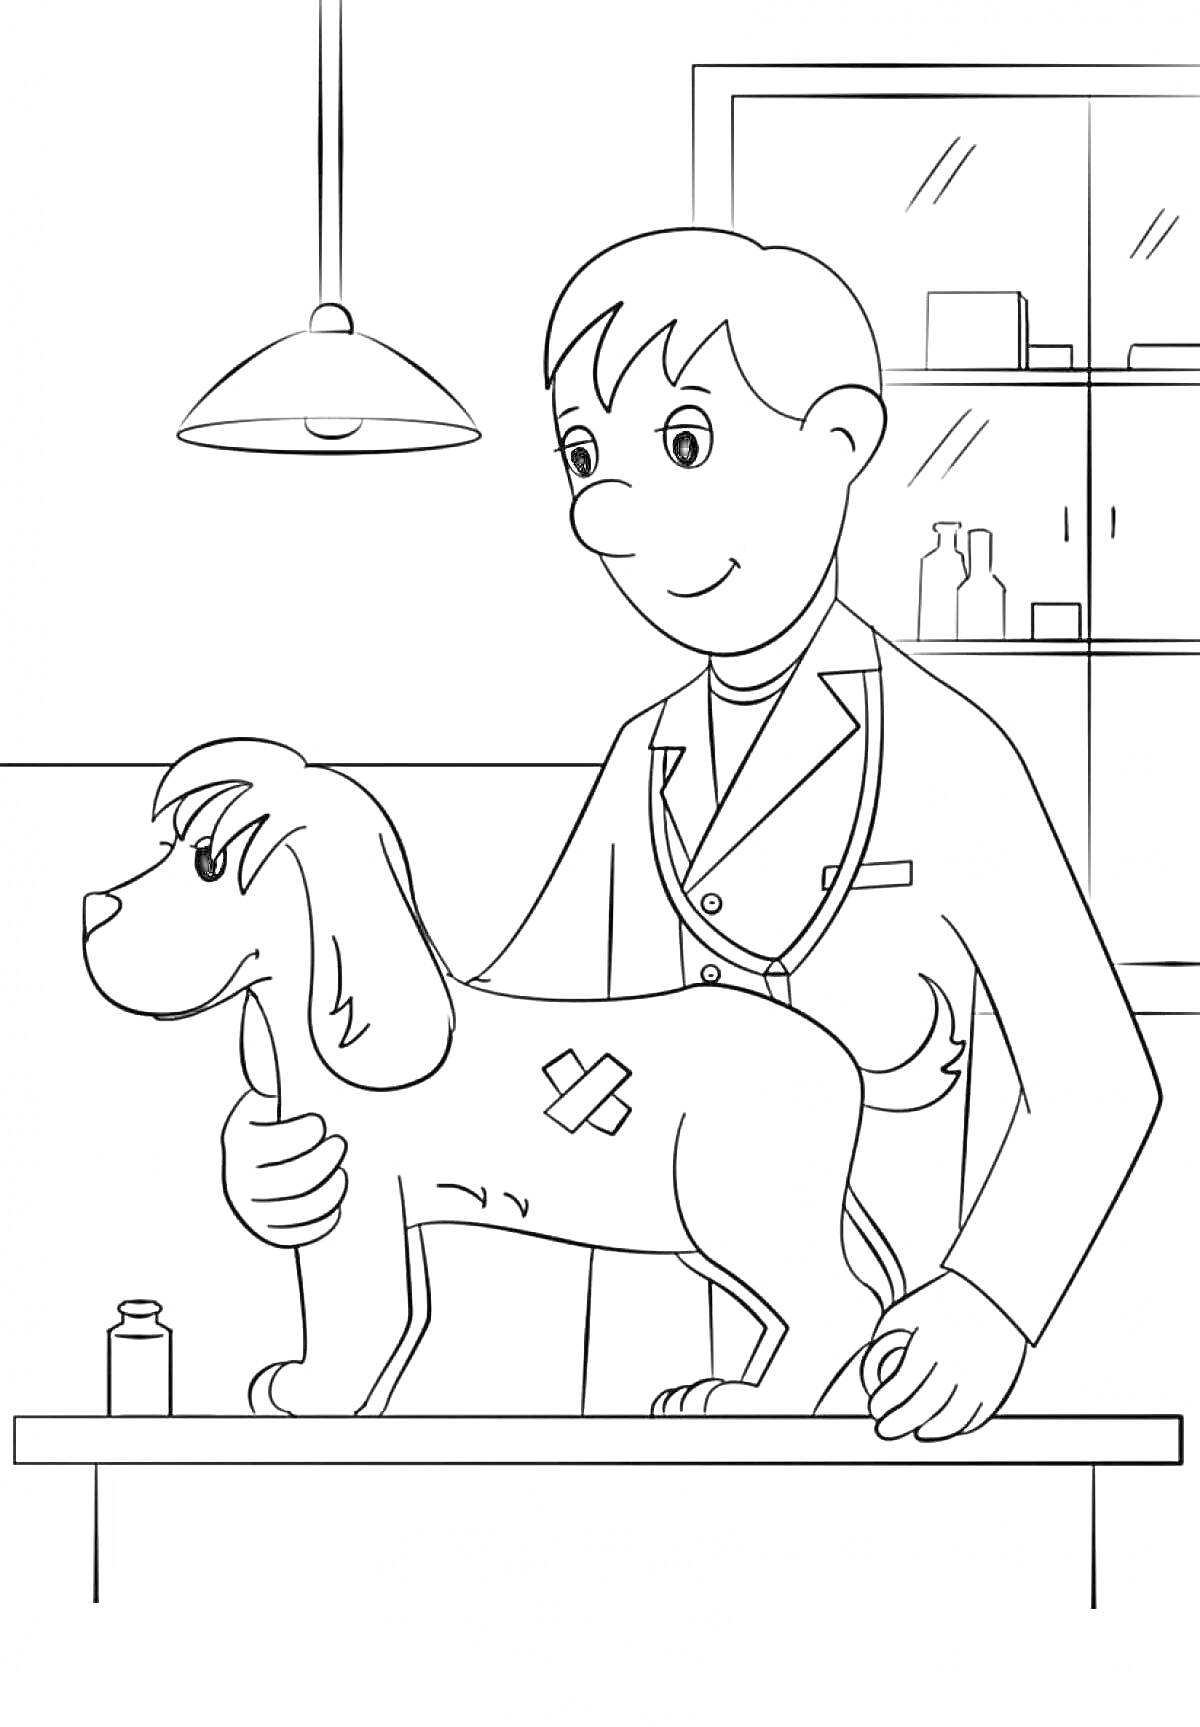 Ветеринар лечит собаку на приеме, наклеенная повязка на собаке, лампа, шкаф с медикаментами, стол для осмотра, флакон с лекарством